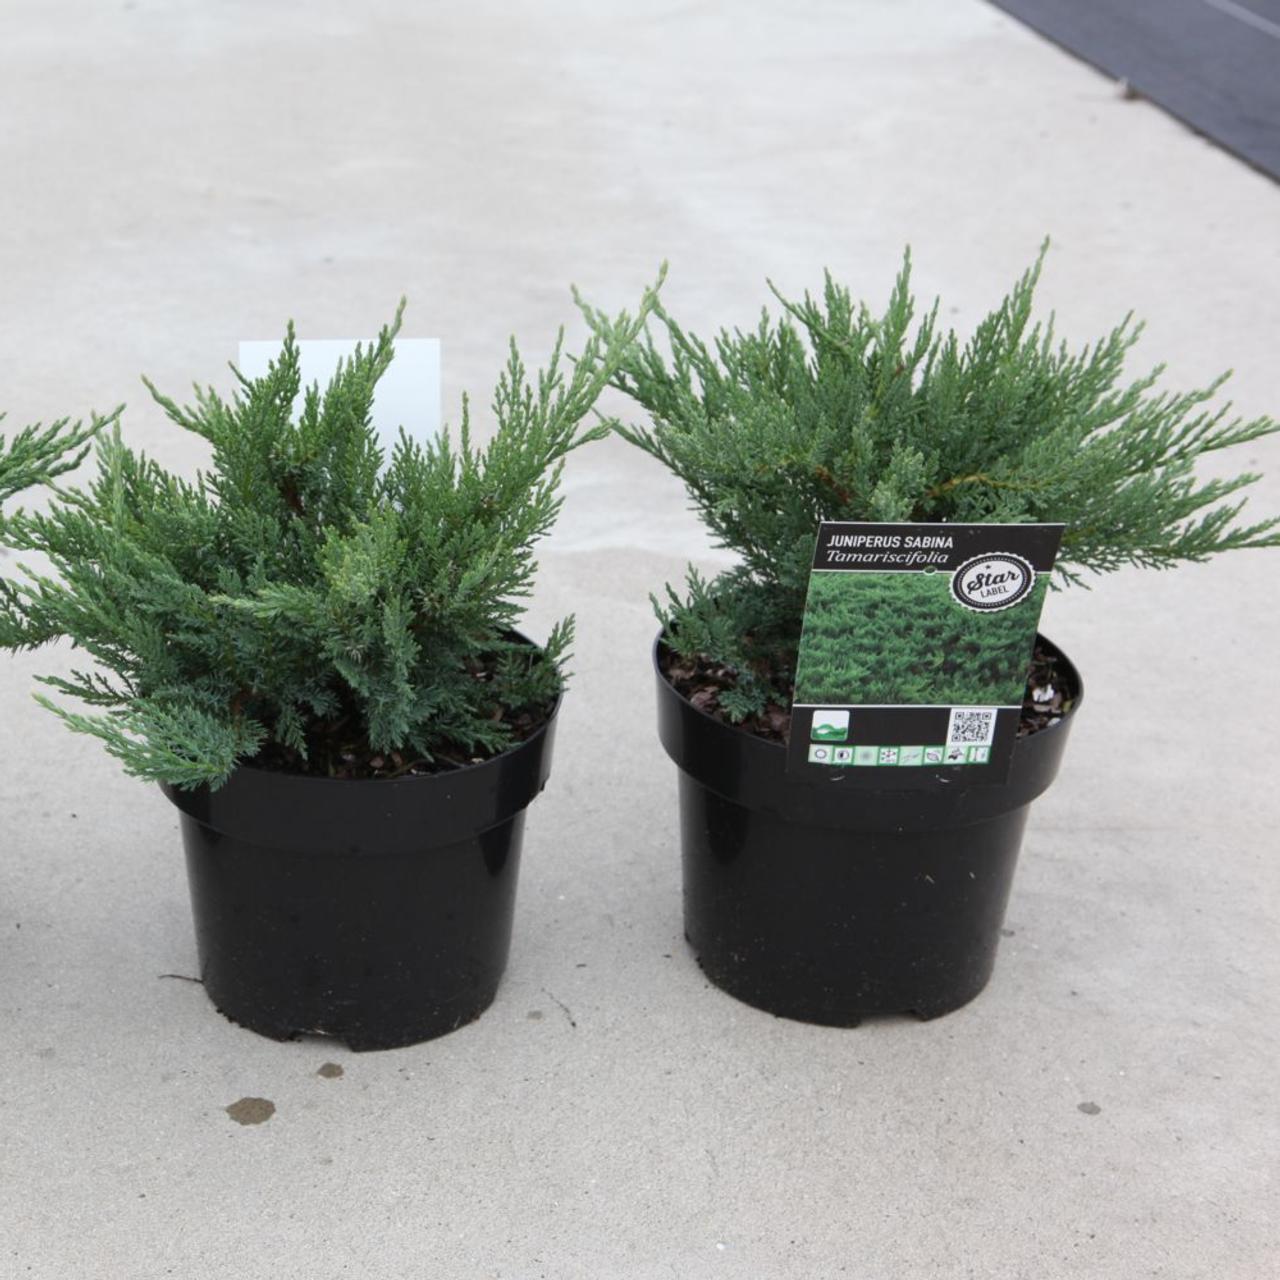 Juniperus sabina 'Tamariscifolia' plant